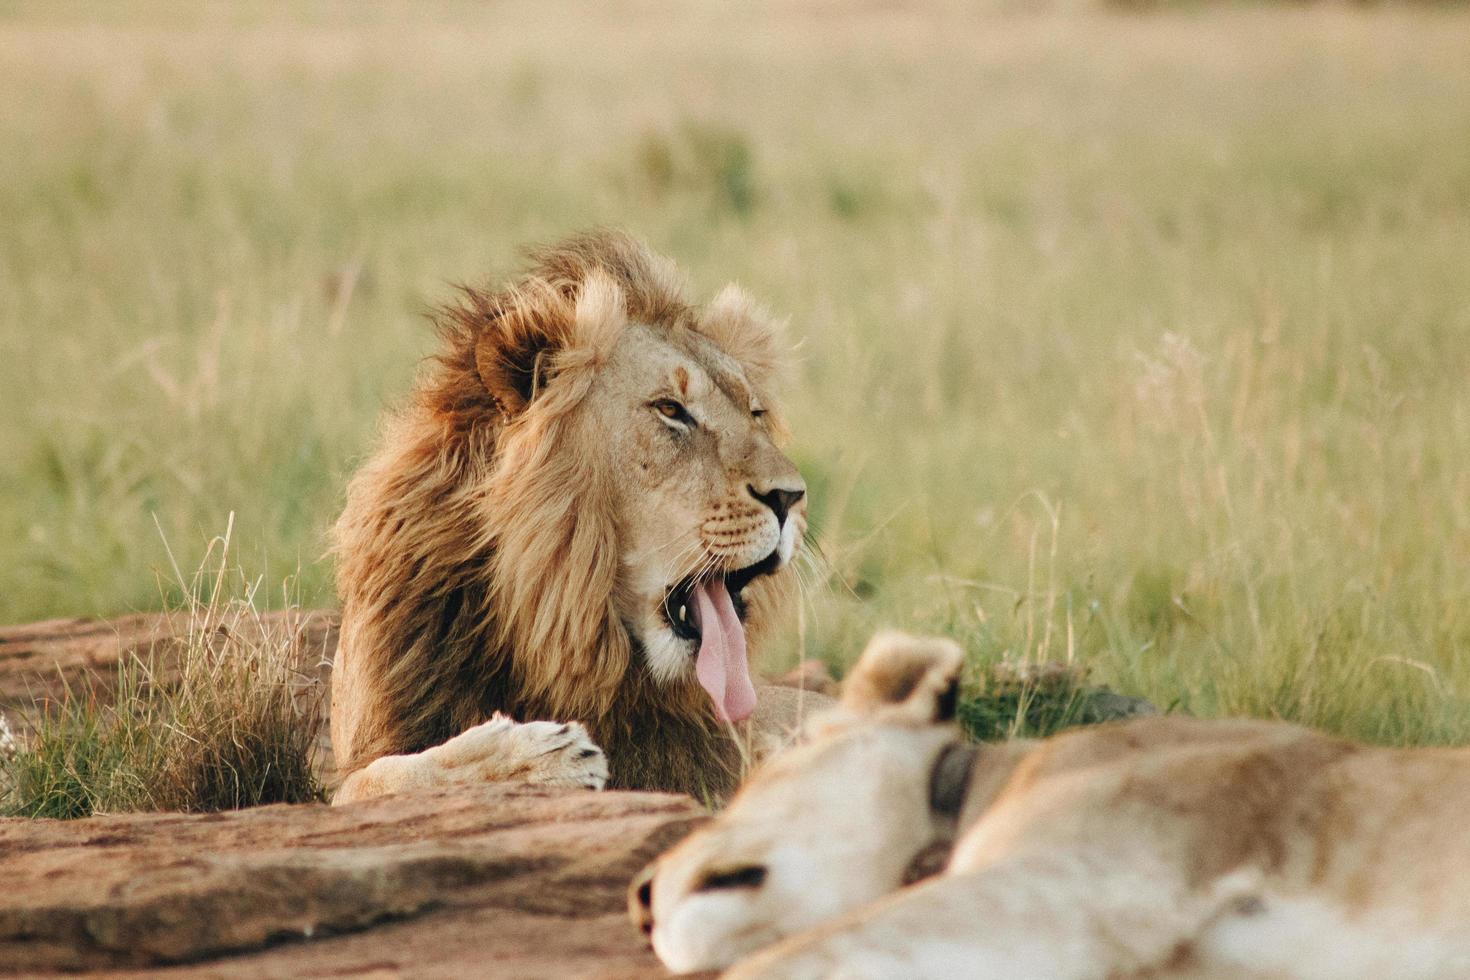 leeuw steekt tong uit terwijl hij in het gras ligt foto